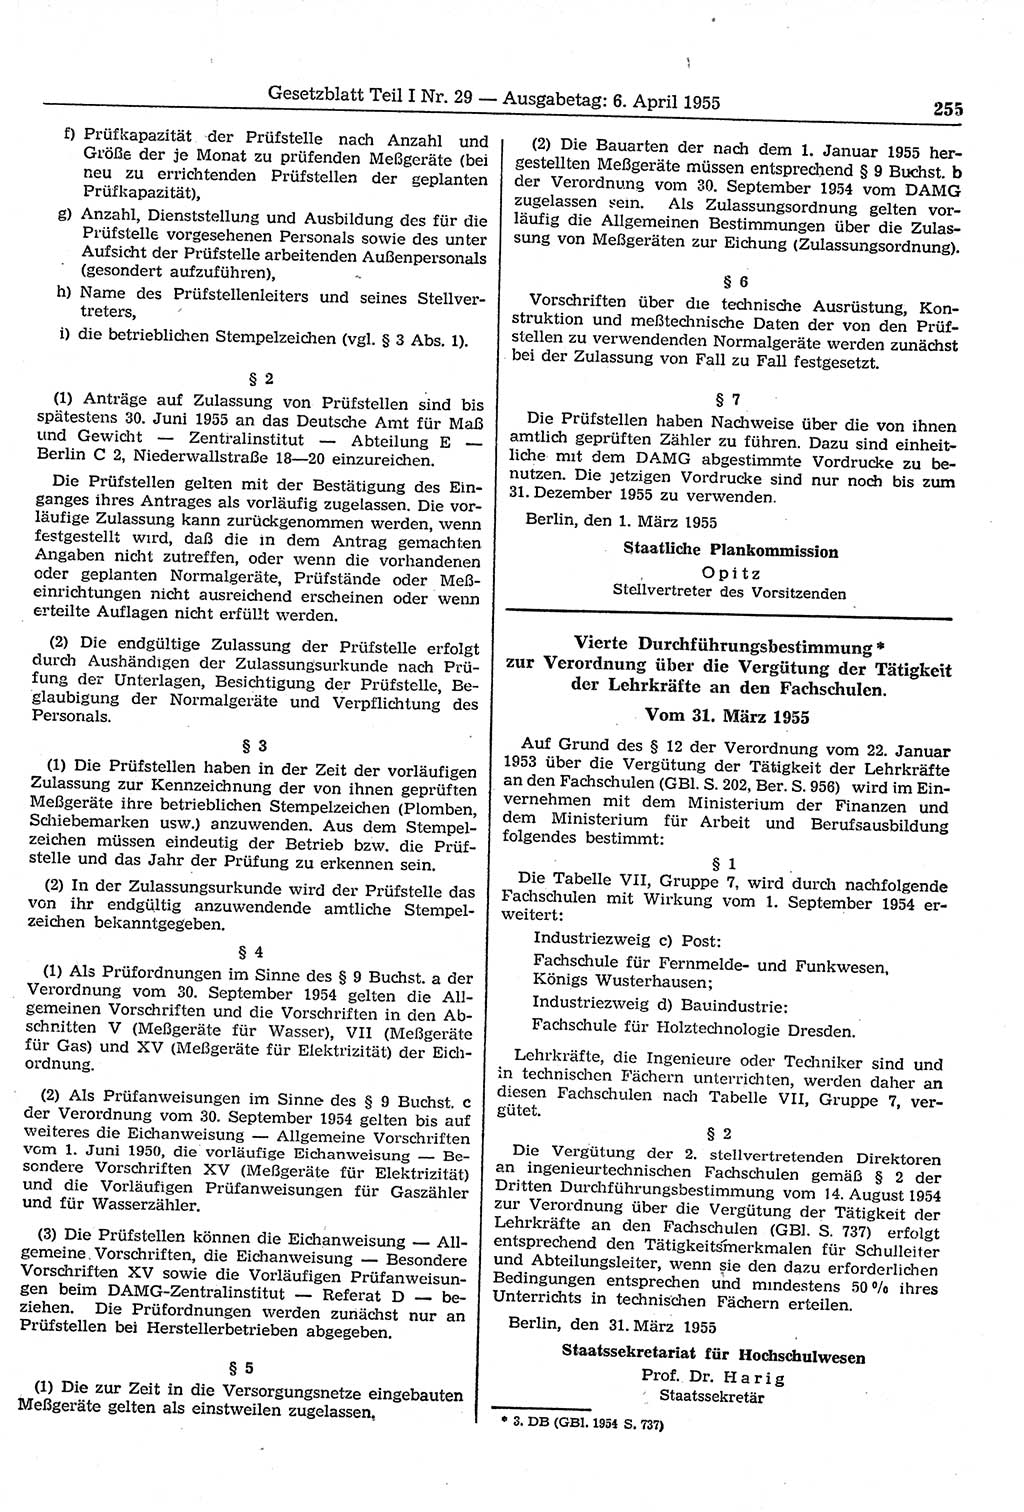 Gesetzblatt (GBl.) der Deutschen Demokratischen Republik (DDR) Teil Ⅰ 1955, Seite 255 (GBl. DDR Ⅰ 1955, S. 255)